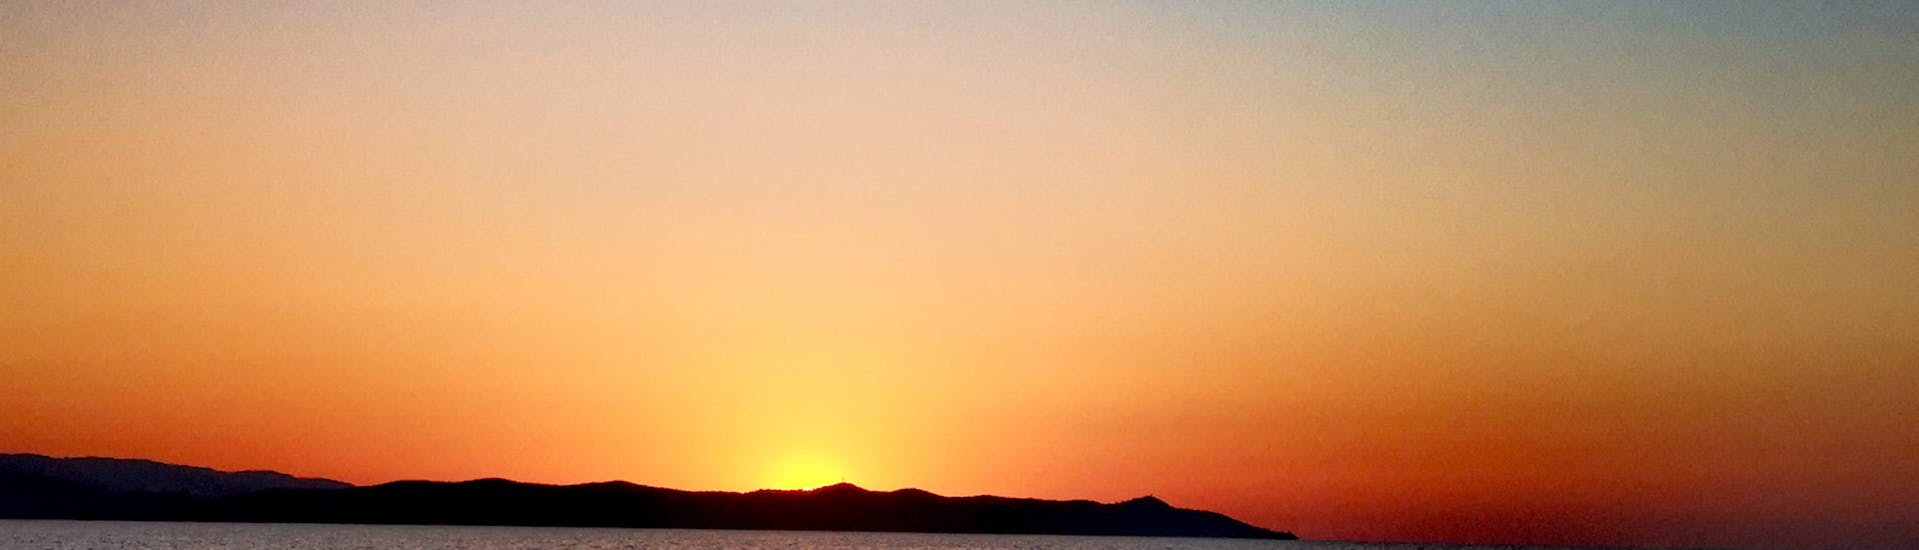 Vue du lever de soleil depuis le bateau d'Evasion Bleue.